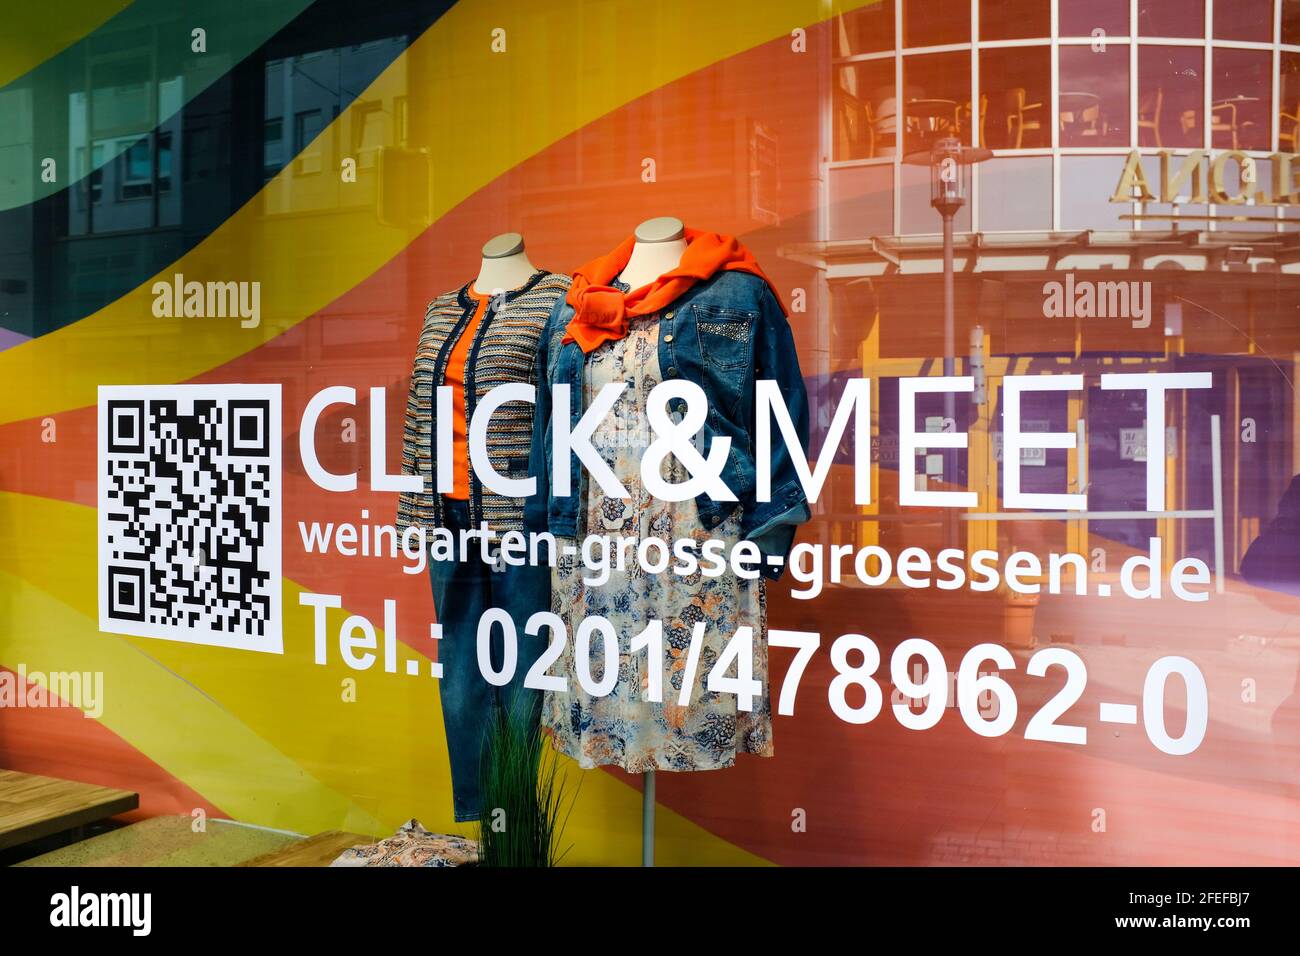 23.04.2021, Essen, Ruhrgebiet, Nordrhein-Westfalen, Deutschland - Click & Meet Einkaufsmoeglichkeit im Bekleidungsgeschaeft  Weingarten fuer grosse Gr Stock Photo